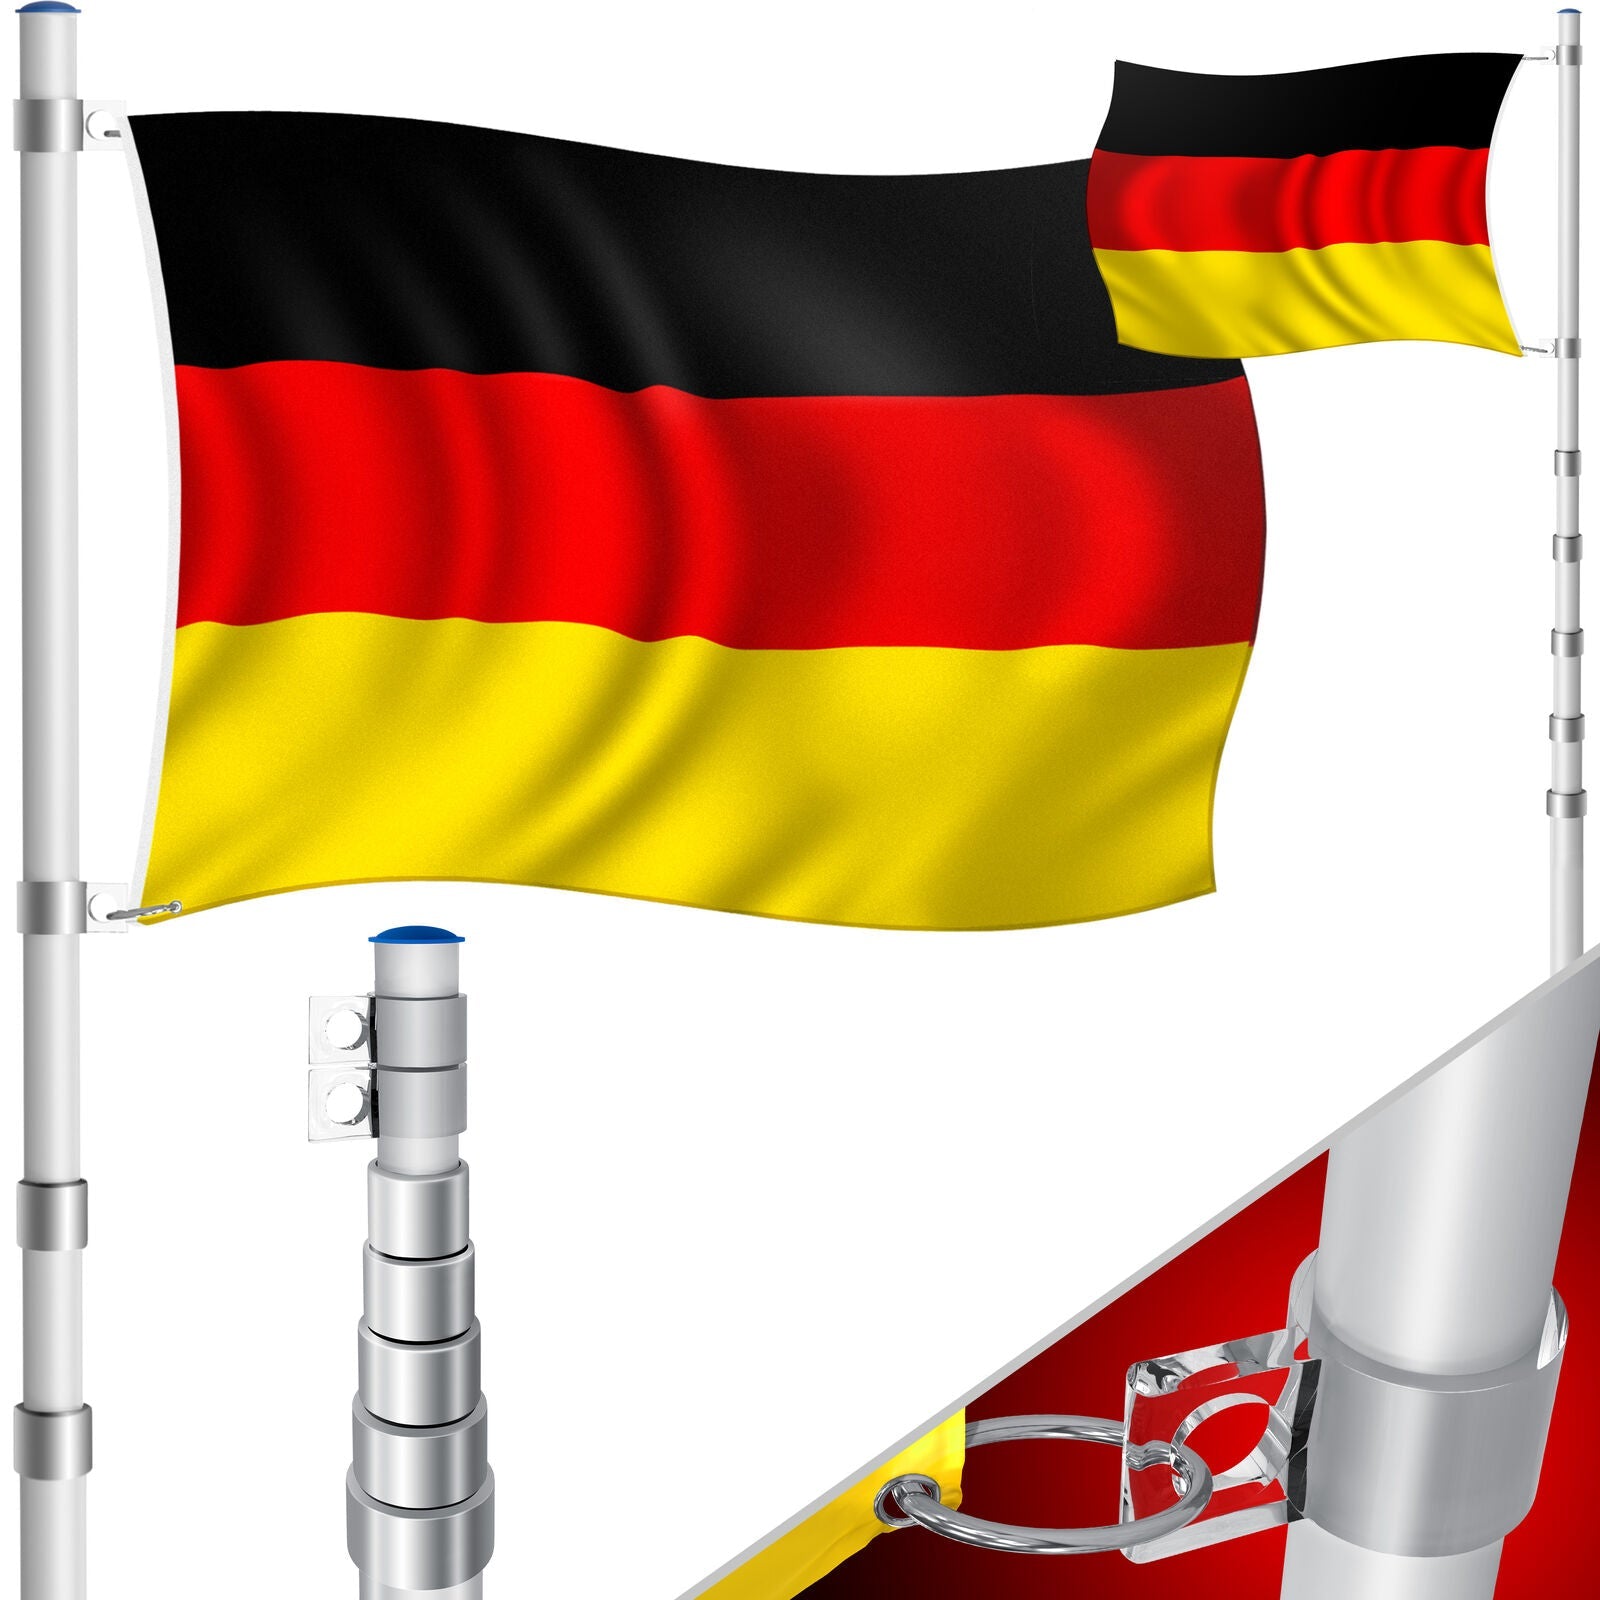 Teleskop-Fahnenmast (Silber o. Schwarz) mit Fahne. 6,30 m. Für Firma, Garten, Haus... Mit Flagge 150 x 90 cm.